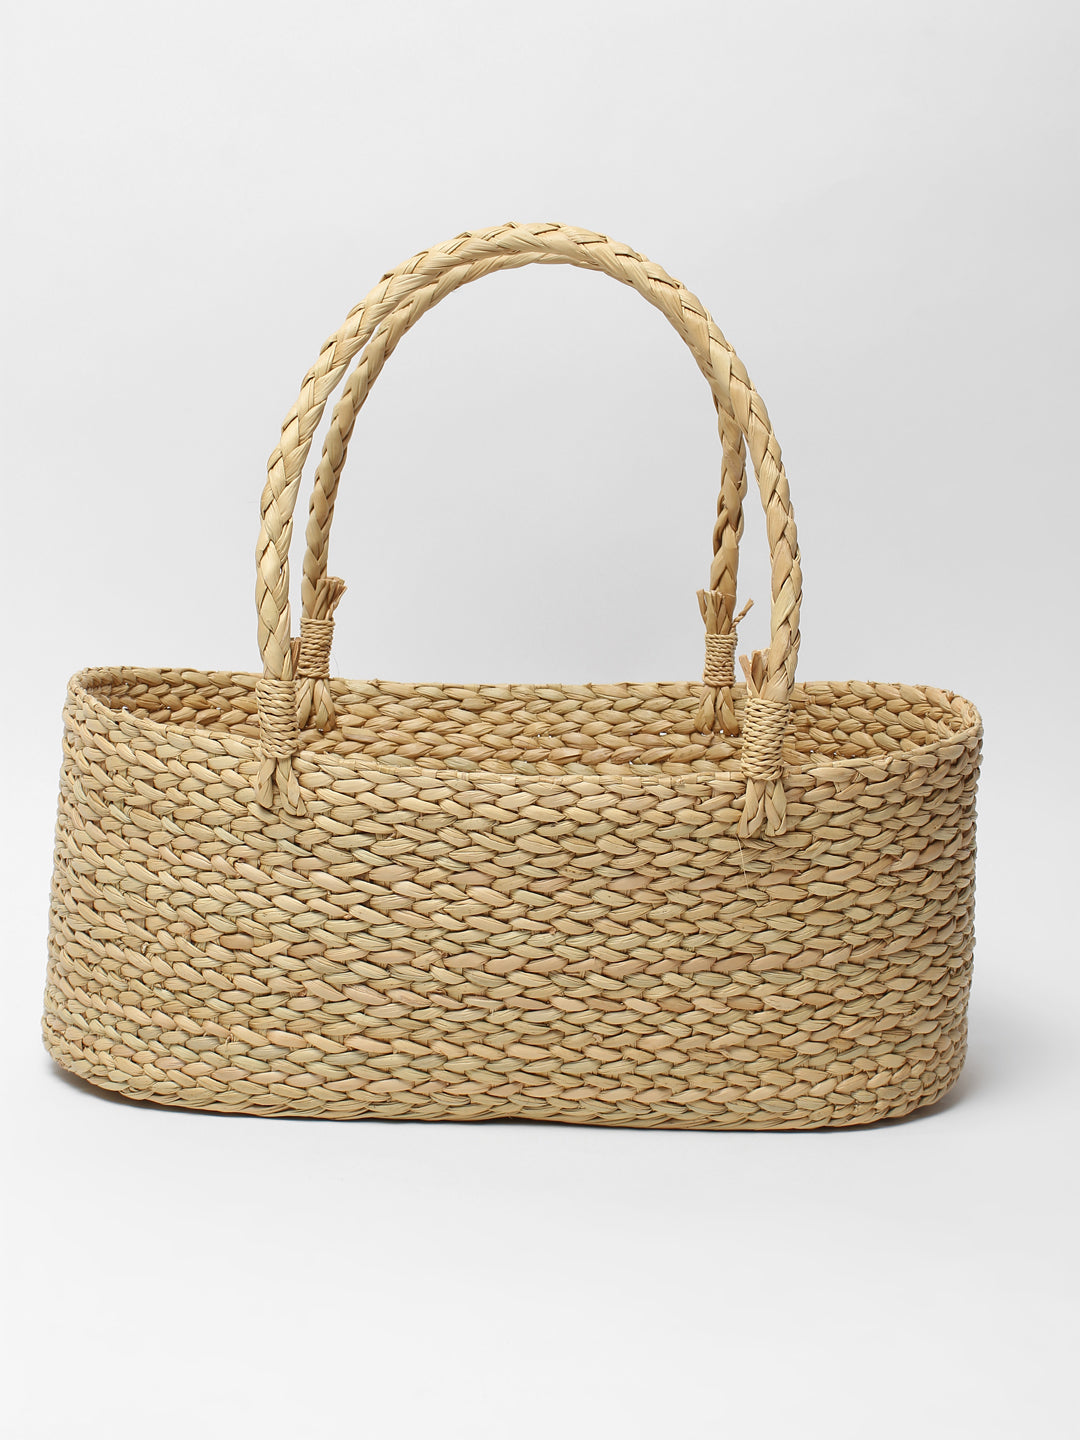 Gifting Basket